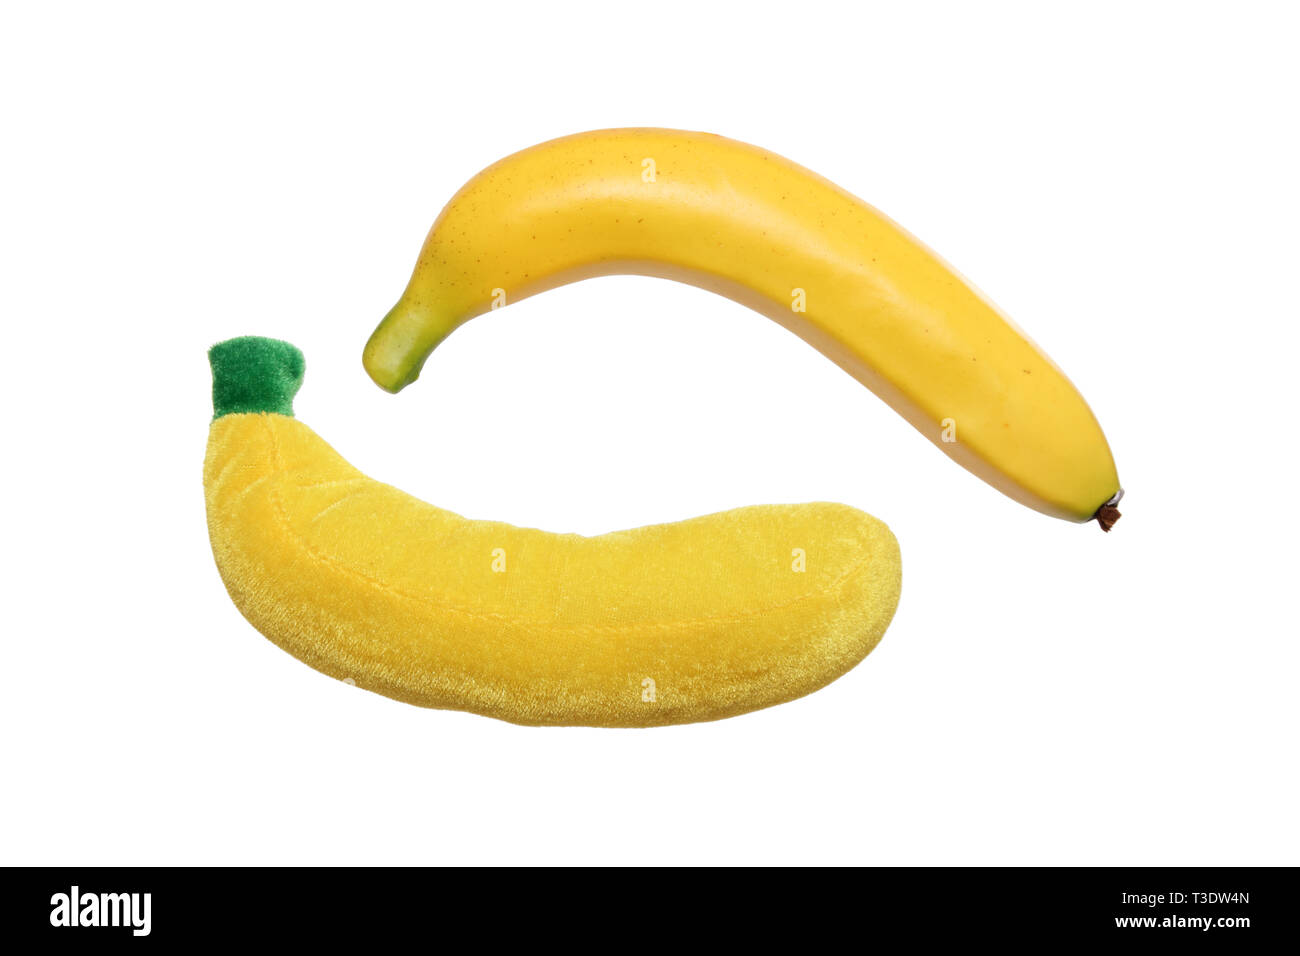 Plastic Banana Banque d'image et photos - Alamy